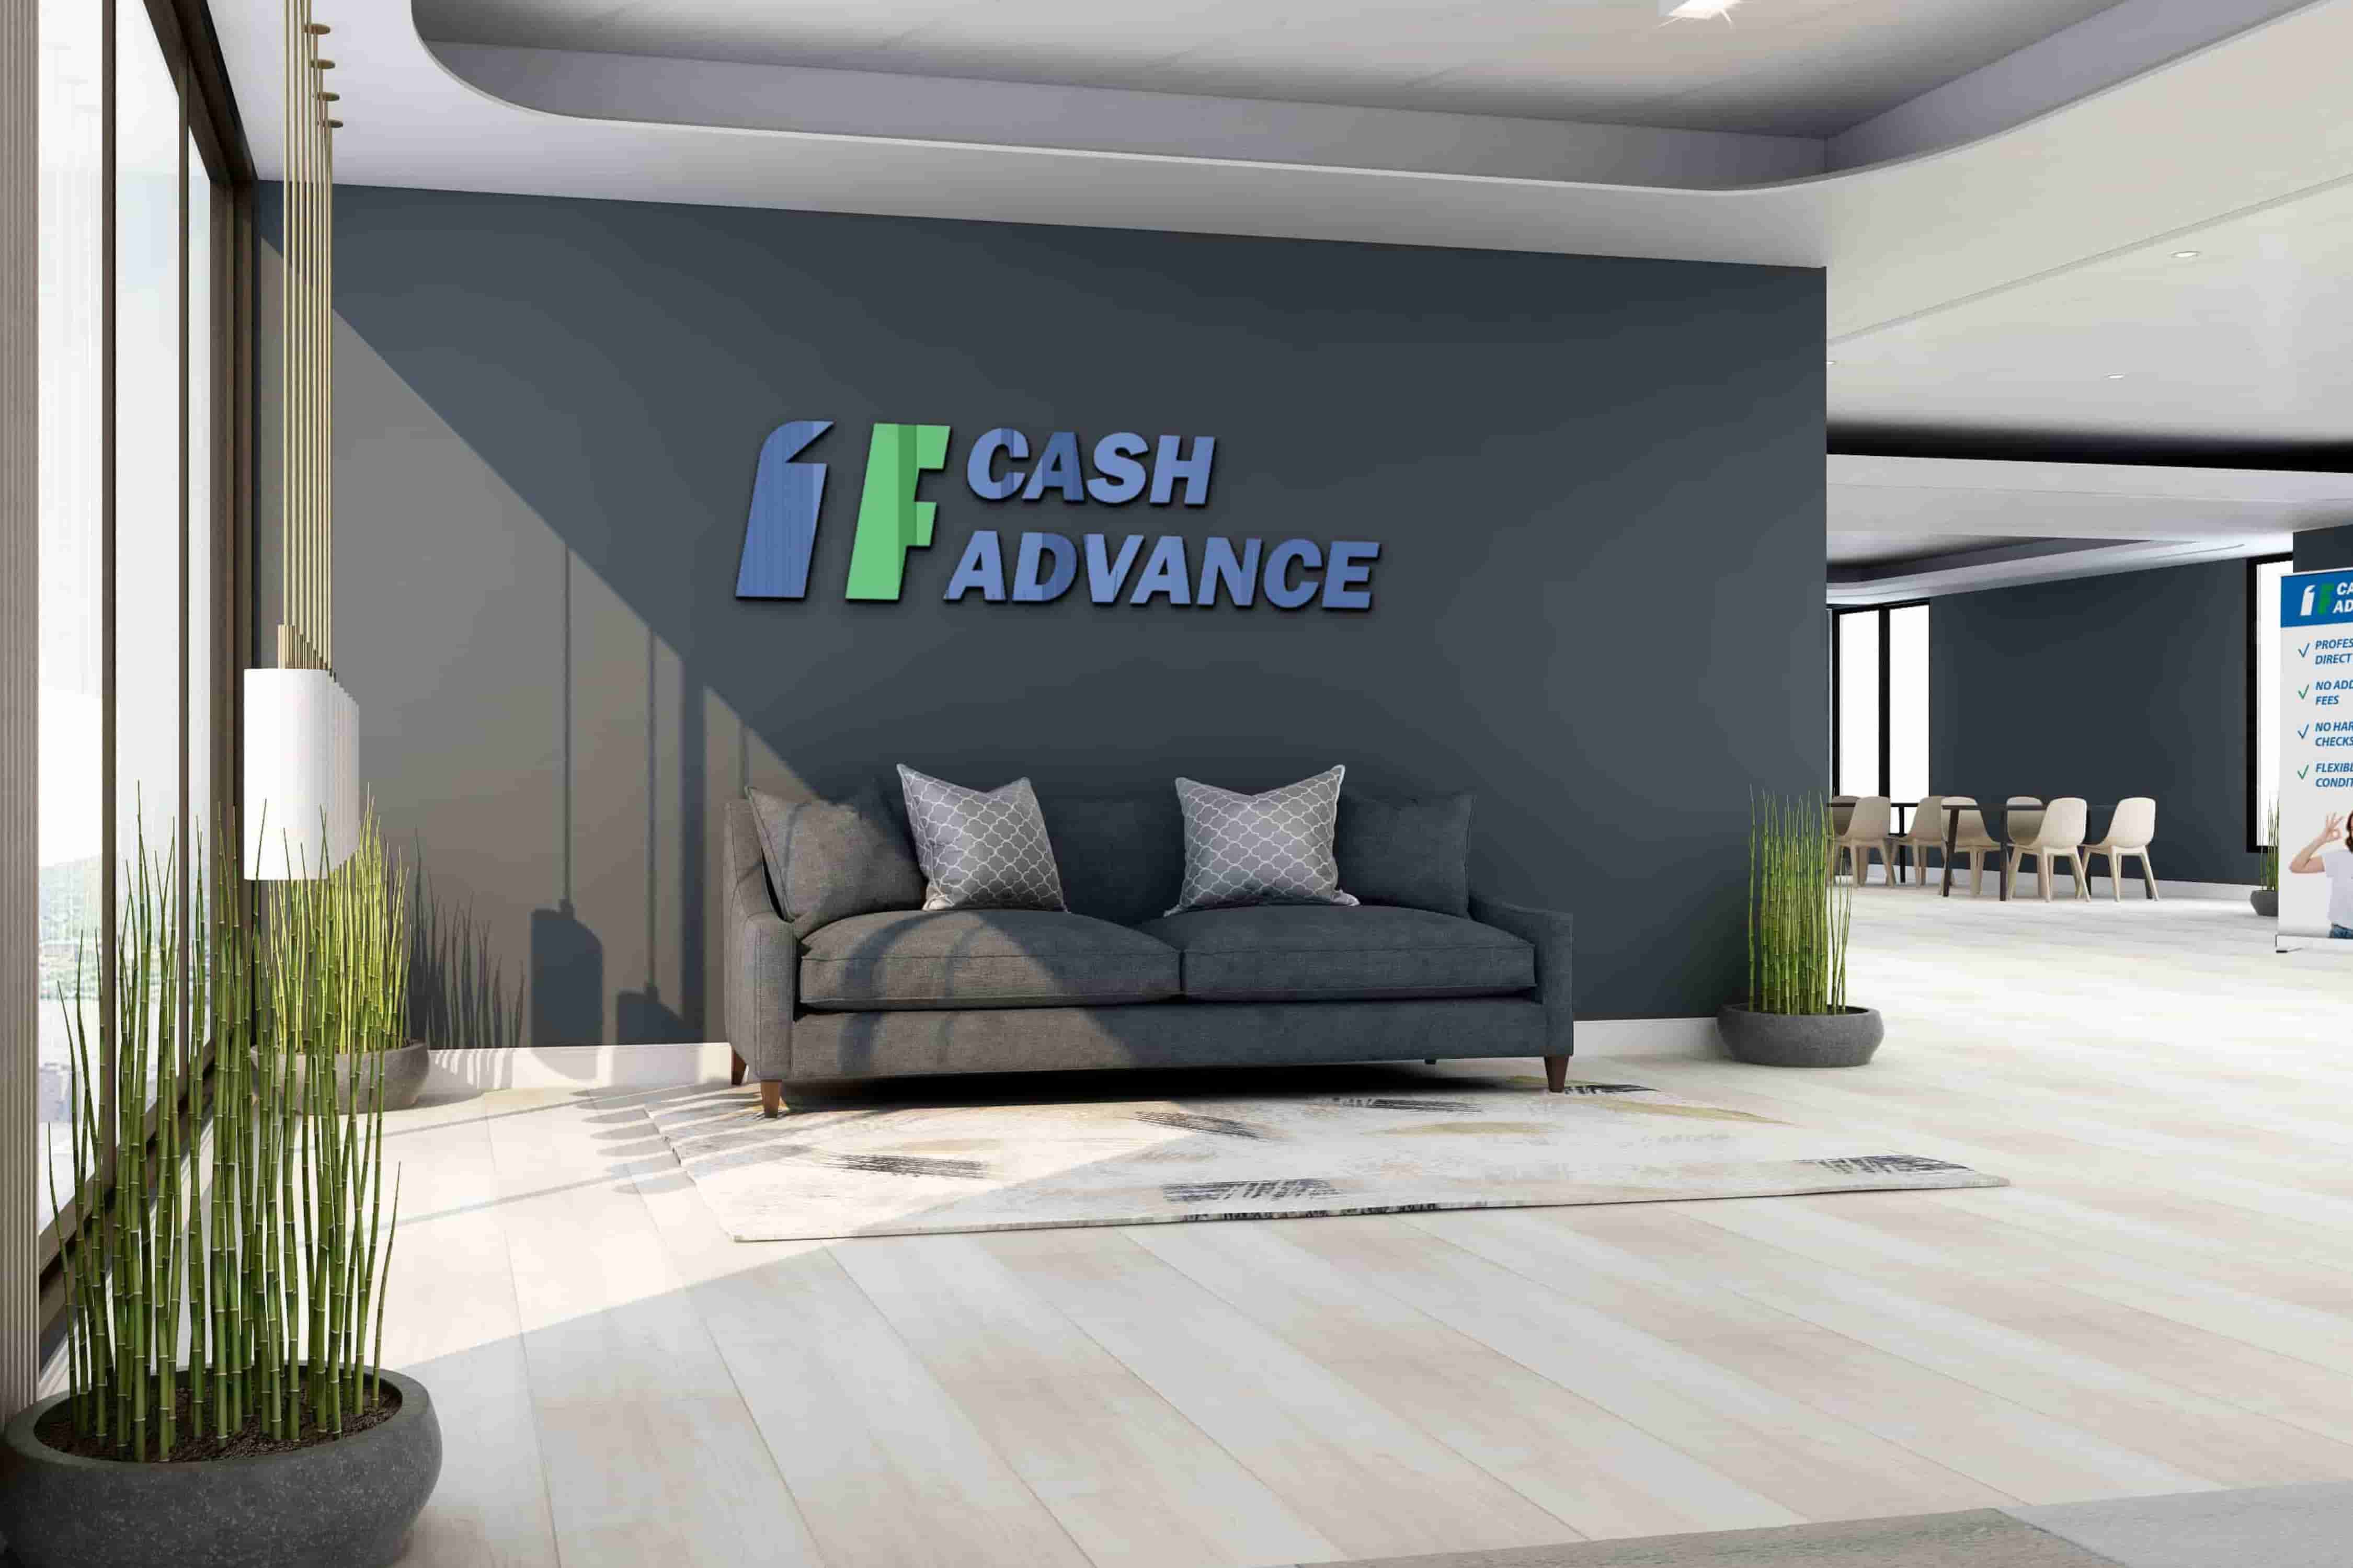 Cash advance loans in Anchorage, AK 99507